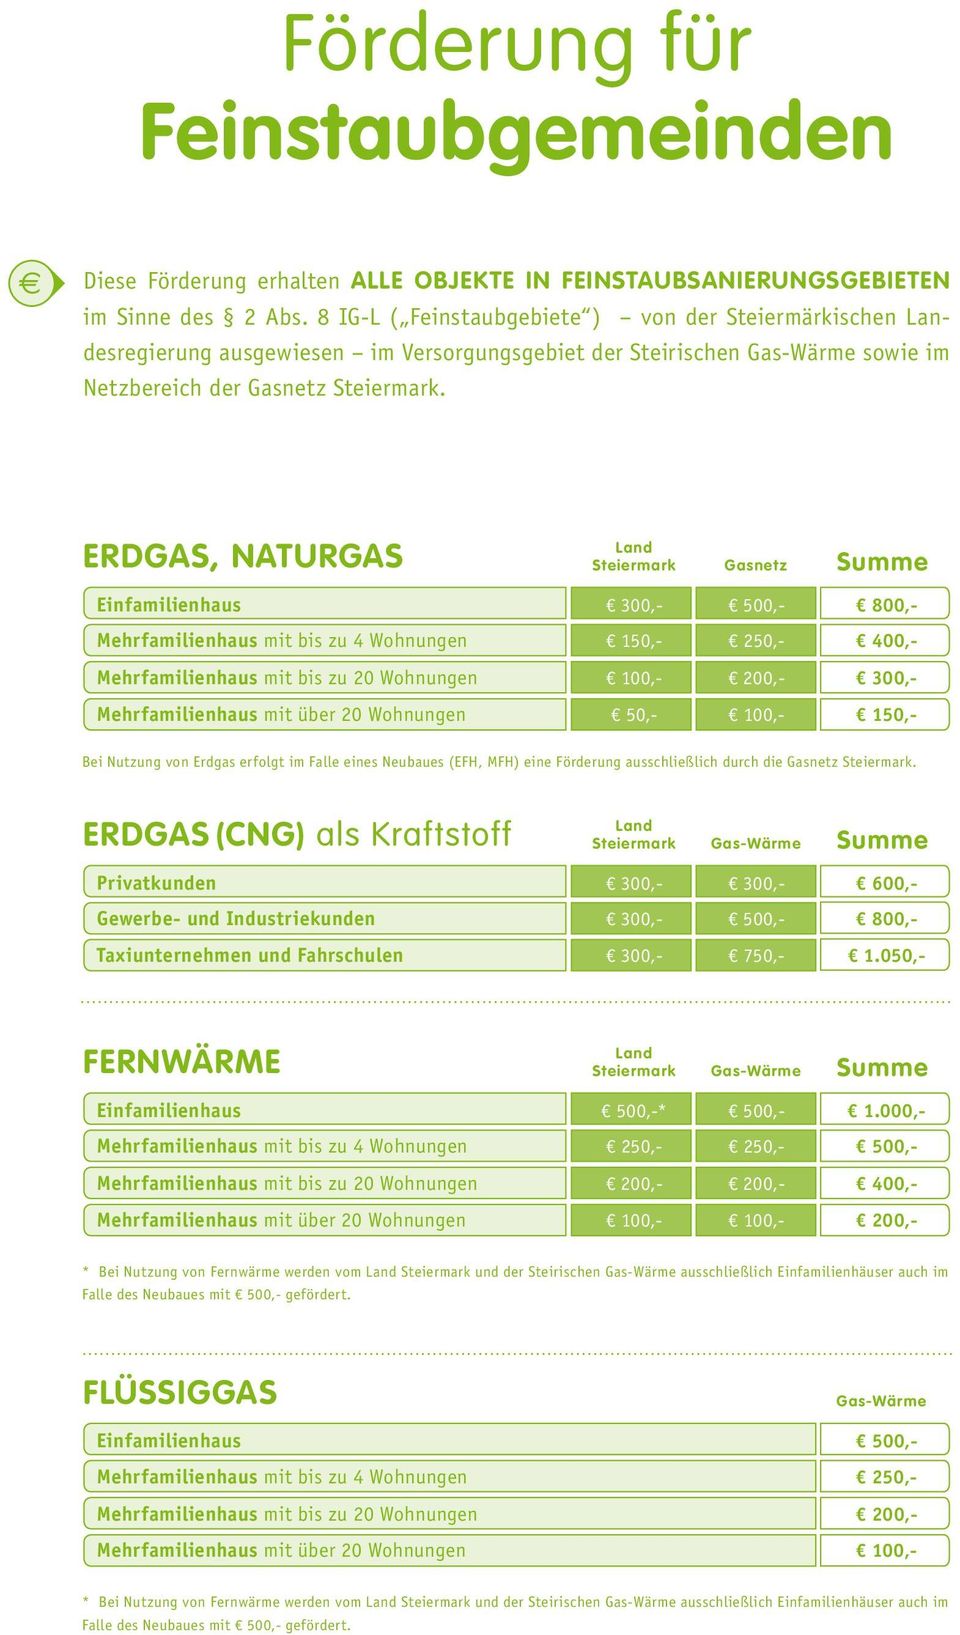 ERDGAS, NATURGAS Land Steiermark Gasnetz Summe Einfamilienhaus 300,- 500,- 800,- Mehrfamilienhaus mit bis zu 4 Wohnungen 150,- 250,- 400,- Mehrfamilienhaus mit bis zu 20 Wohnungen 100,- 200,- 300,-